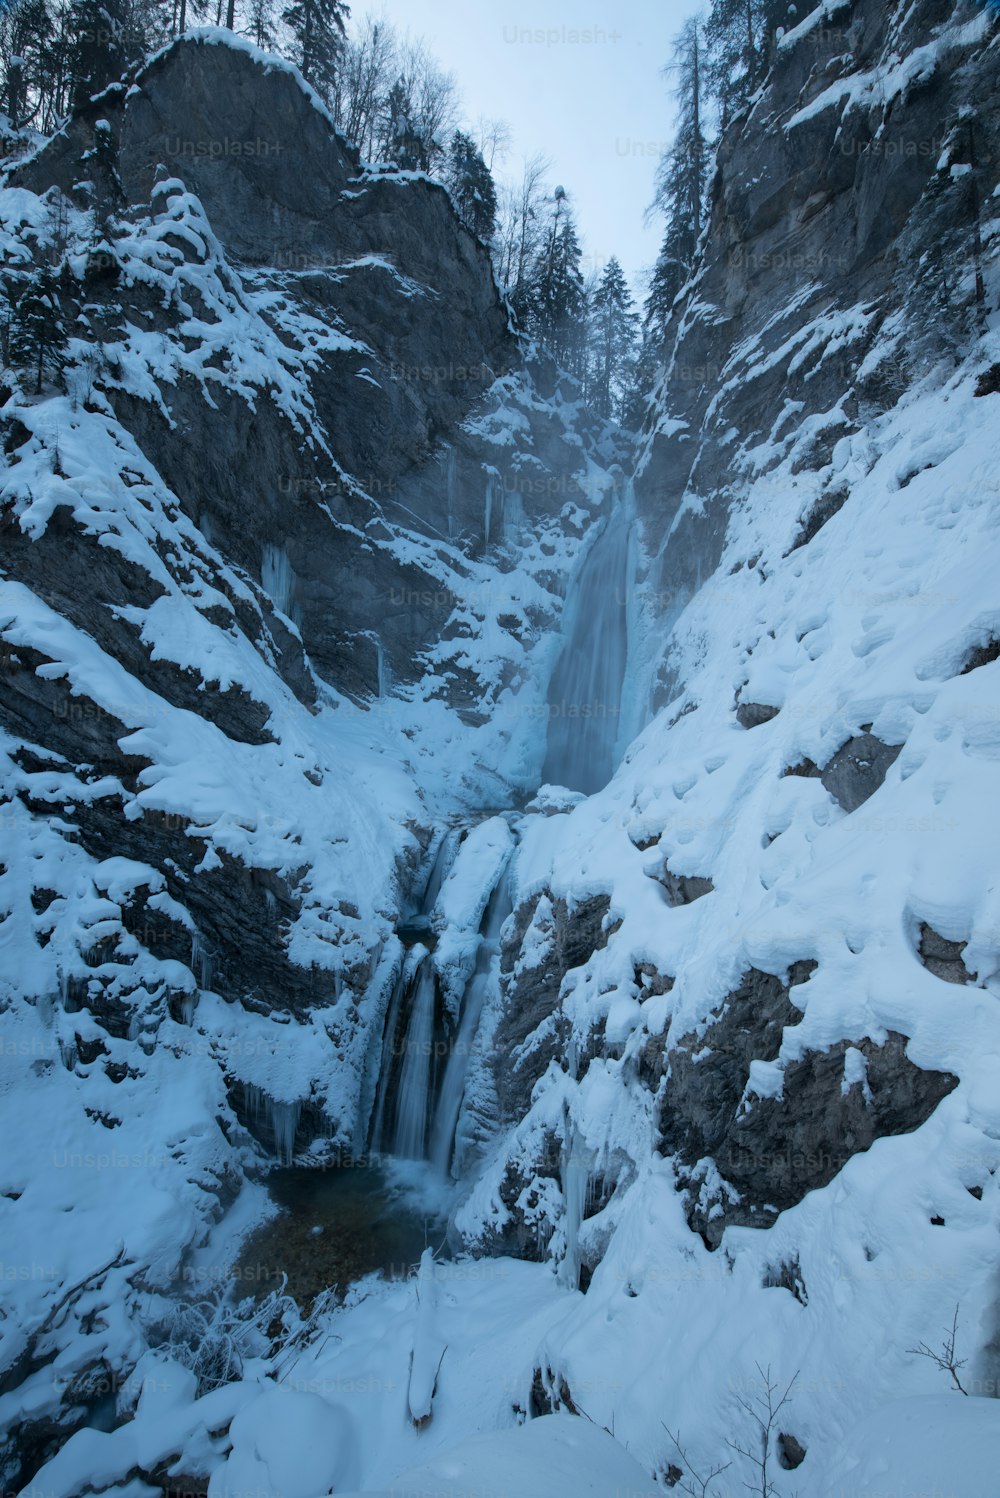 ein schneebedeckter Berghang mit einem Wasserfall